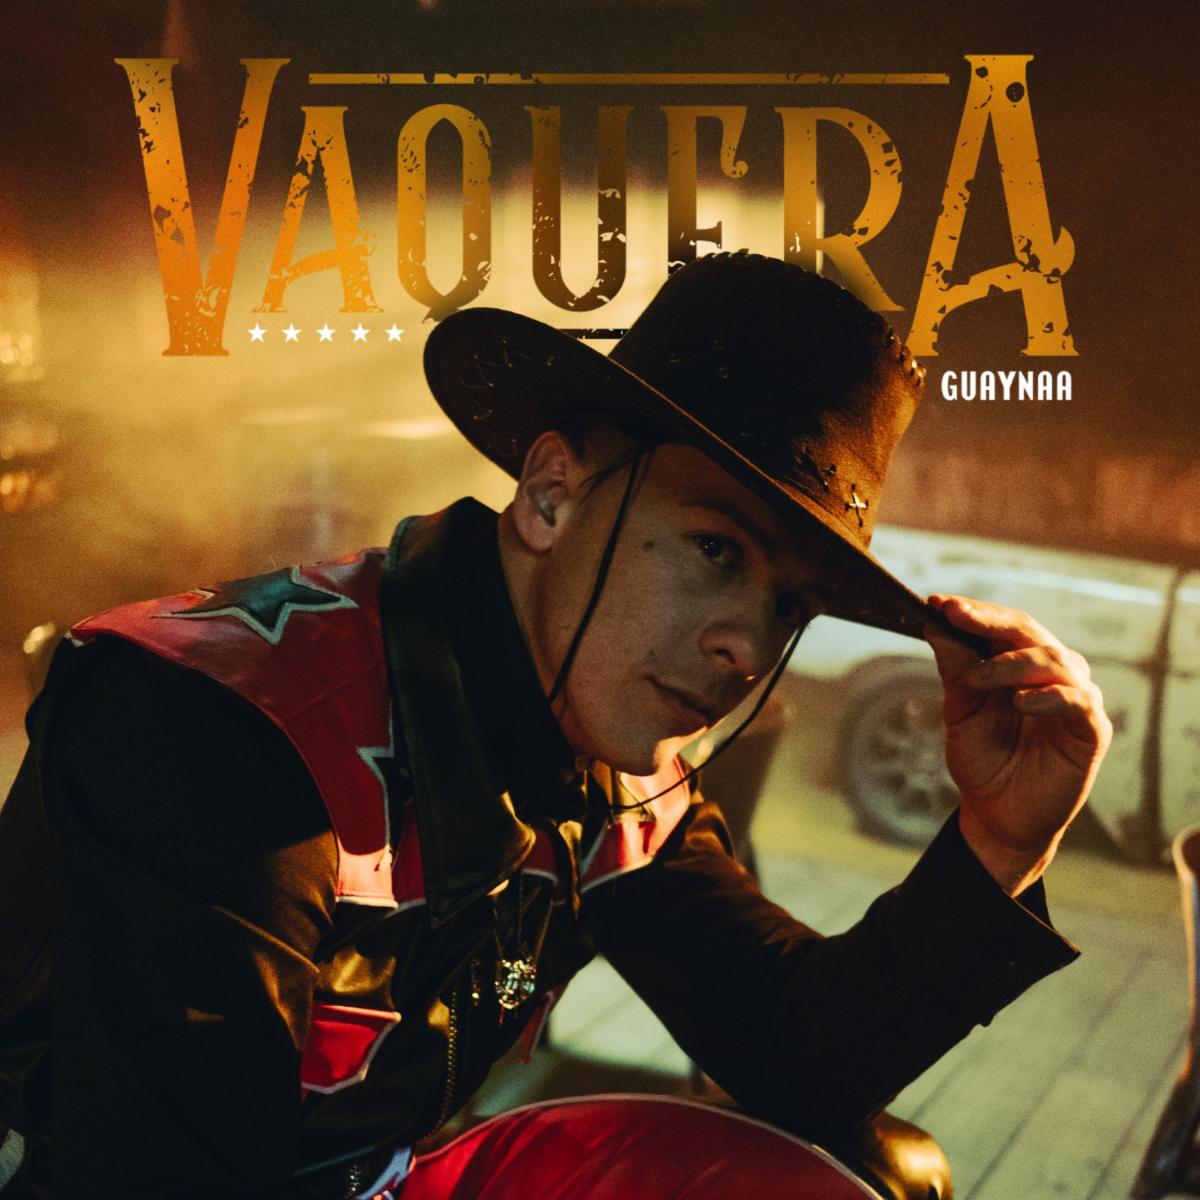 GUAYNAA lanza nuevo sencillo “Vaquera”